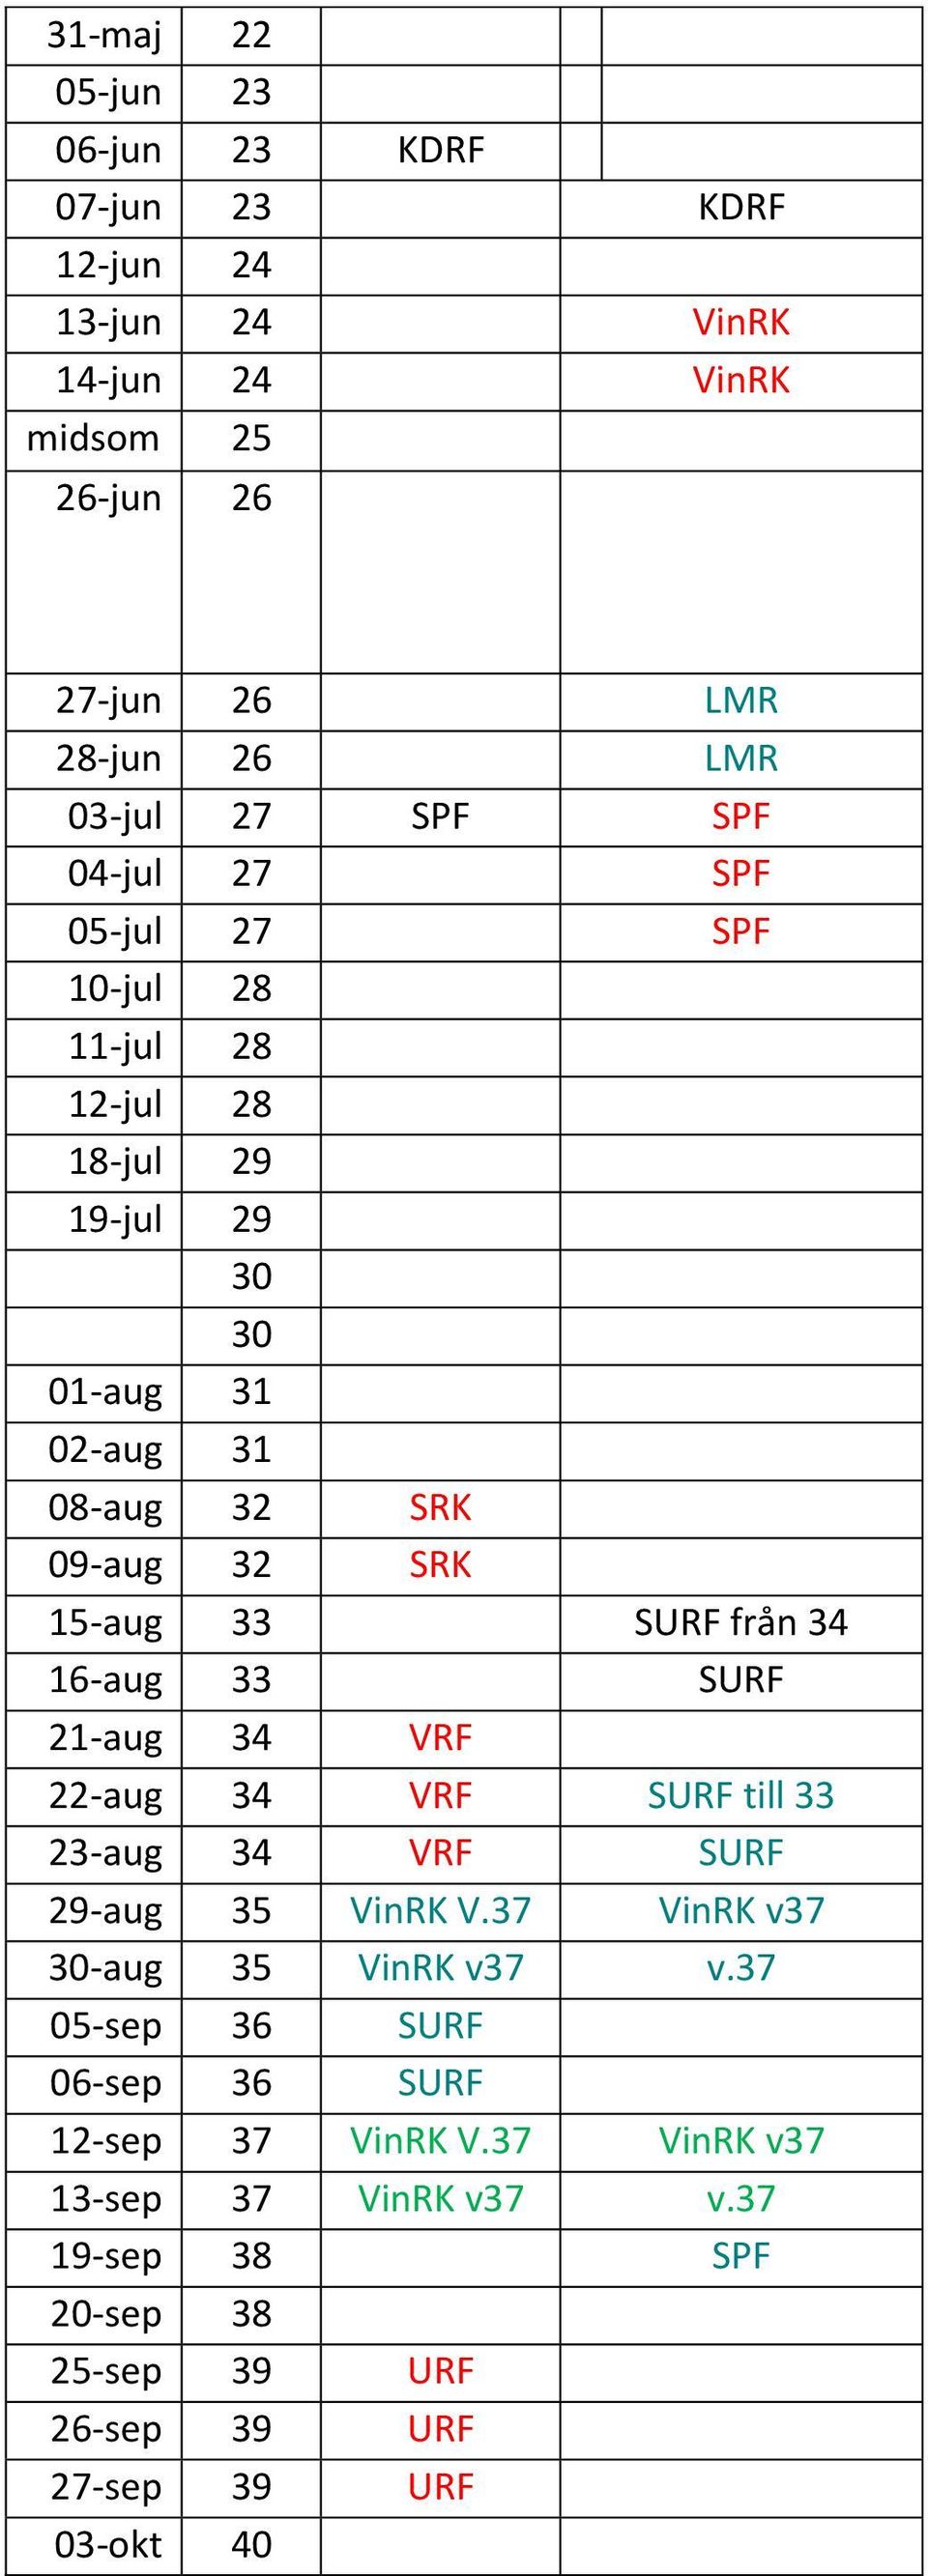 SURF från 34 16-aug 33 SURF 21-aug 34 VRF 22-aug 34 VRF SURF till 33 23-aug 34 VRF SURF 29-aug 35 VinRK V.37 VinRK v37 30-aug 35 VinRK v37 v.